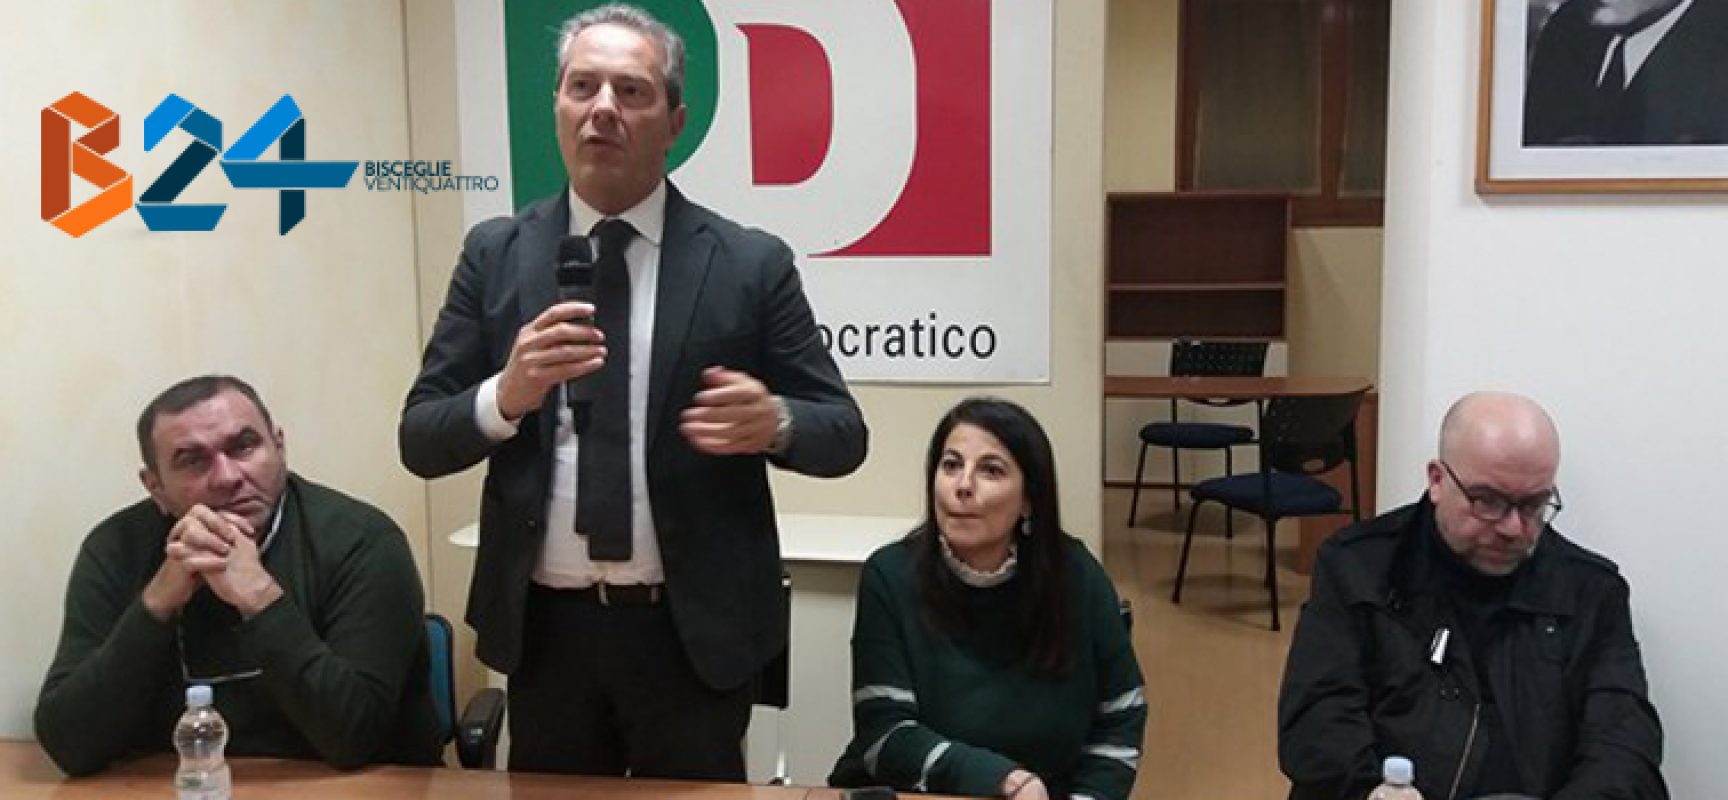 Presentazione candidati Pd, Spina: “Siamo argine ai populismi di destra e dei 5 stelle”